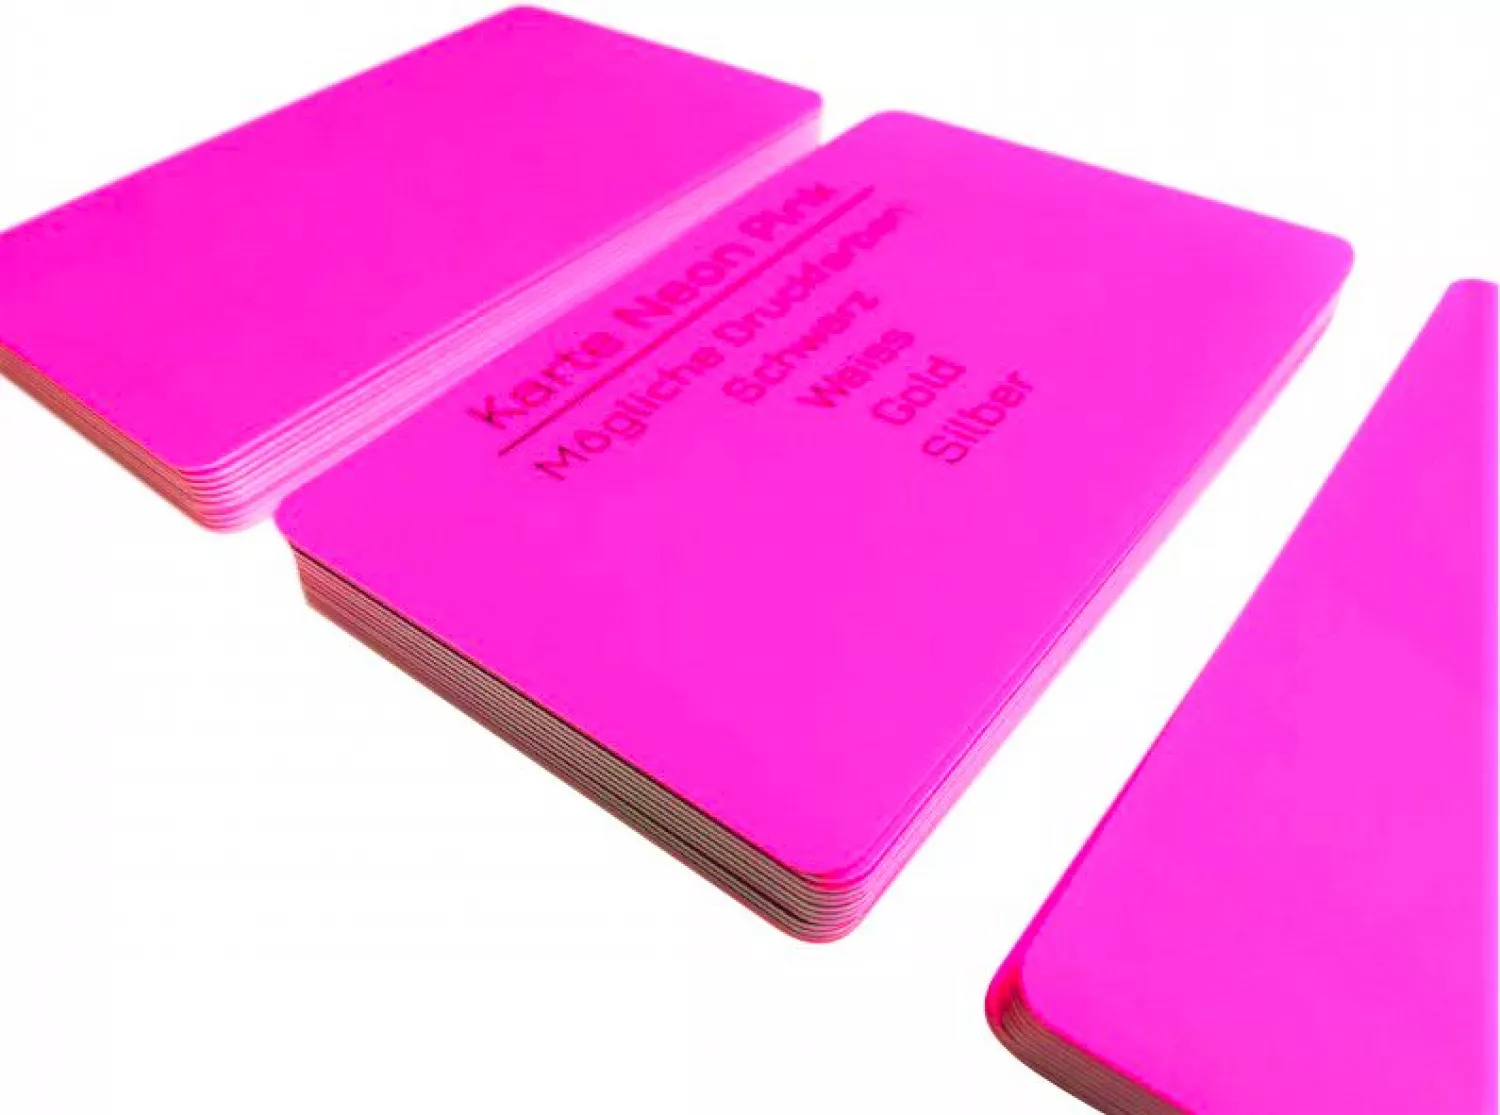 Plastikkarte neon pink